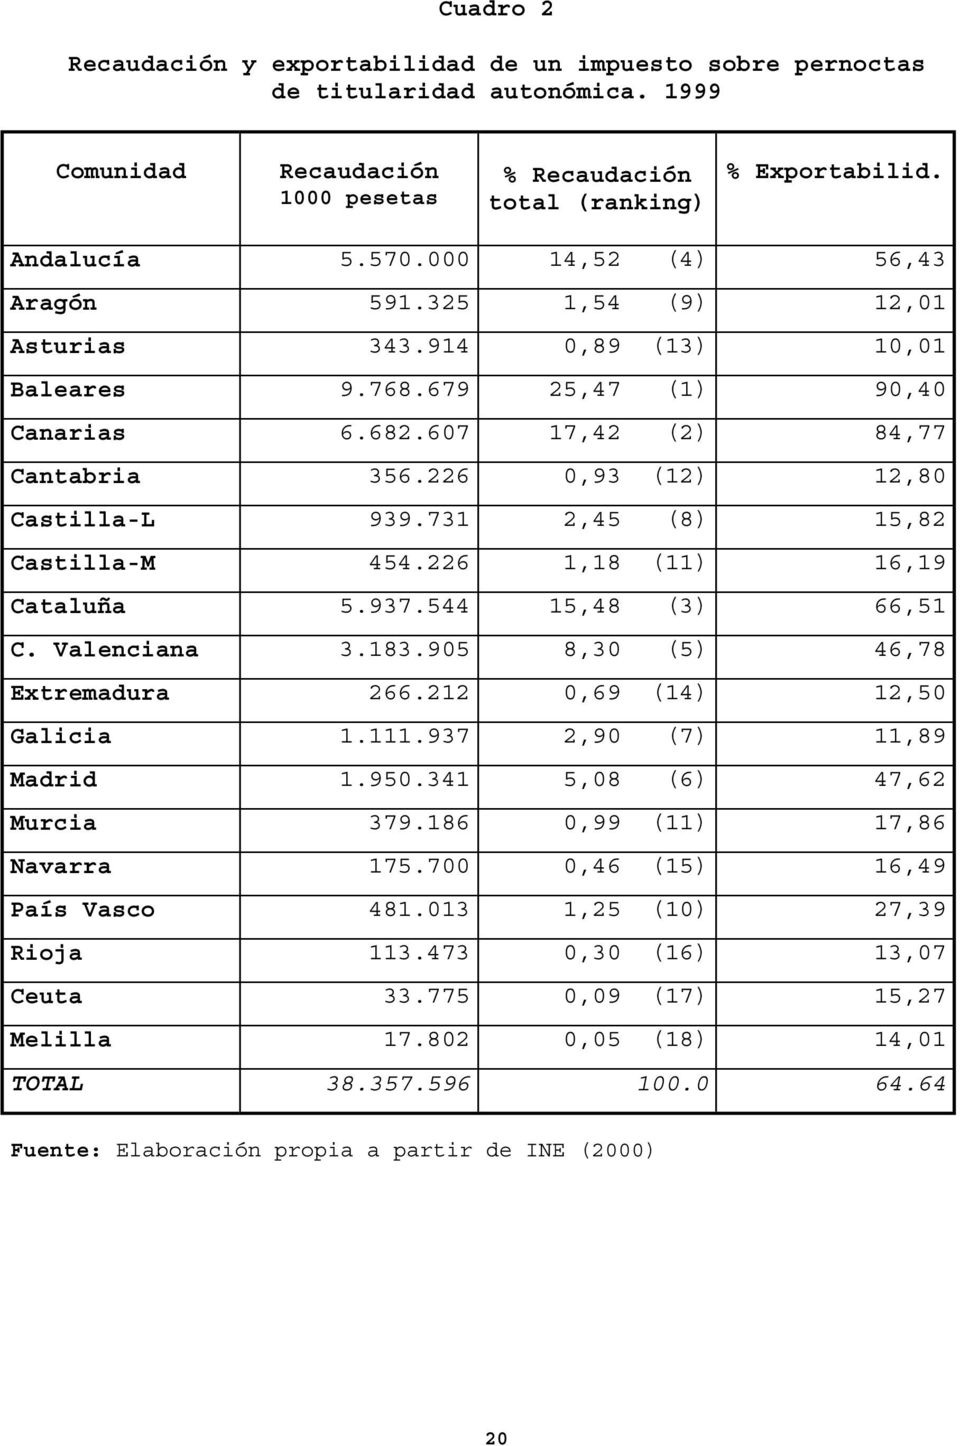 226 0,93 (12) 12,80 Castilla-L 939.731 2,45 (8) 15,82 Castilla-M 454.226 1,18 (11) 16,19 Cataluña 5.937.544 15,48 (3) 66,51 C. Valenciana 3.183.905 8,30 (5) 46,78 Extremadura 266.